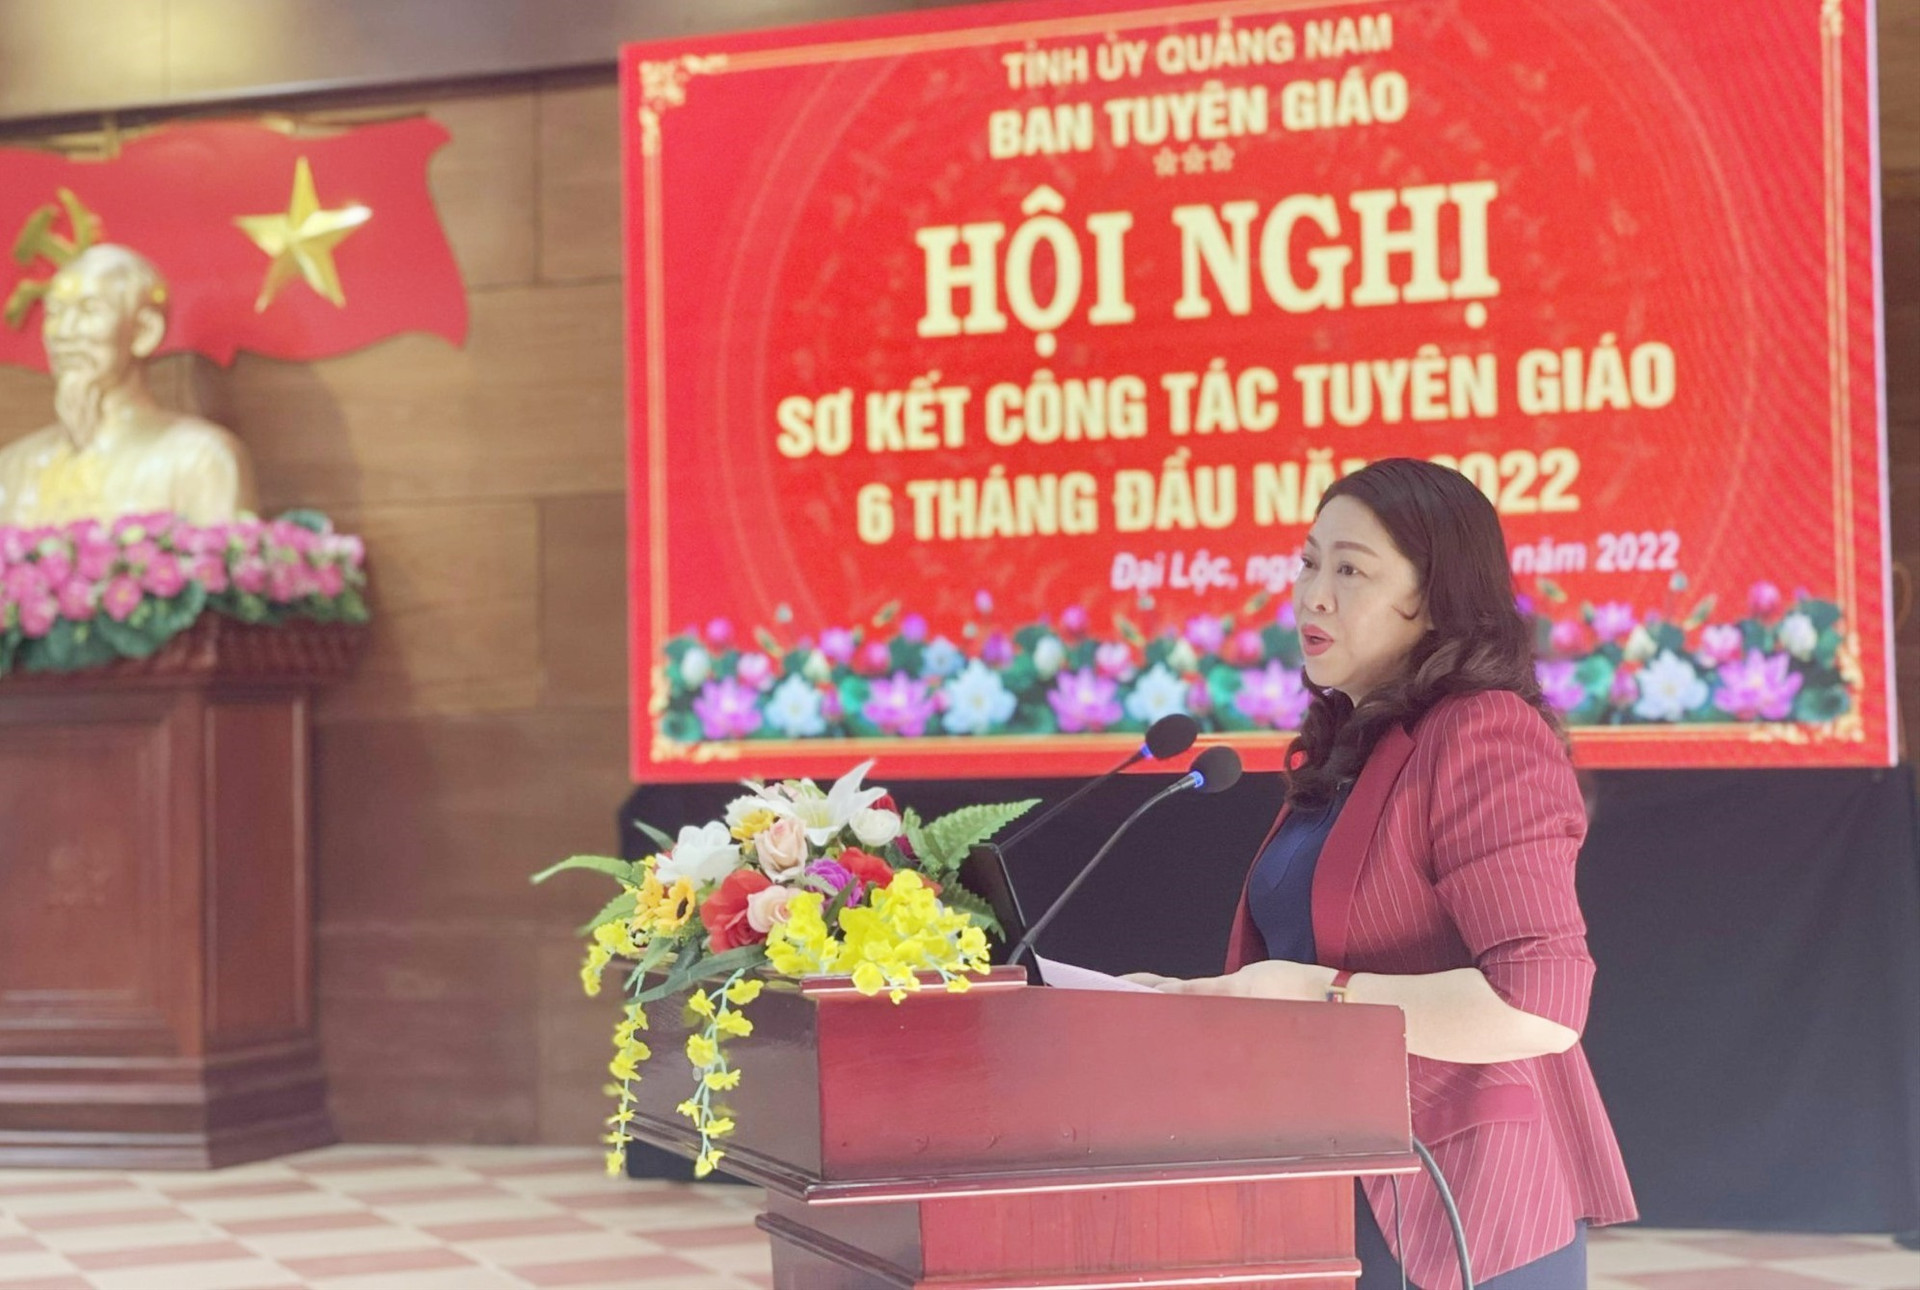 Bà Nguyễn Thị Thu Lan - Trưởng Ban Tuyên giáo Tỉnh ủy Quảng Nam phát biểu tại hội nghị. Ảnh: ĐĂNG QUANG